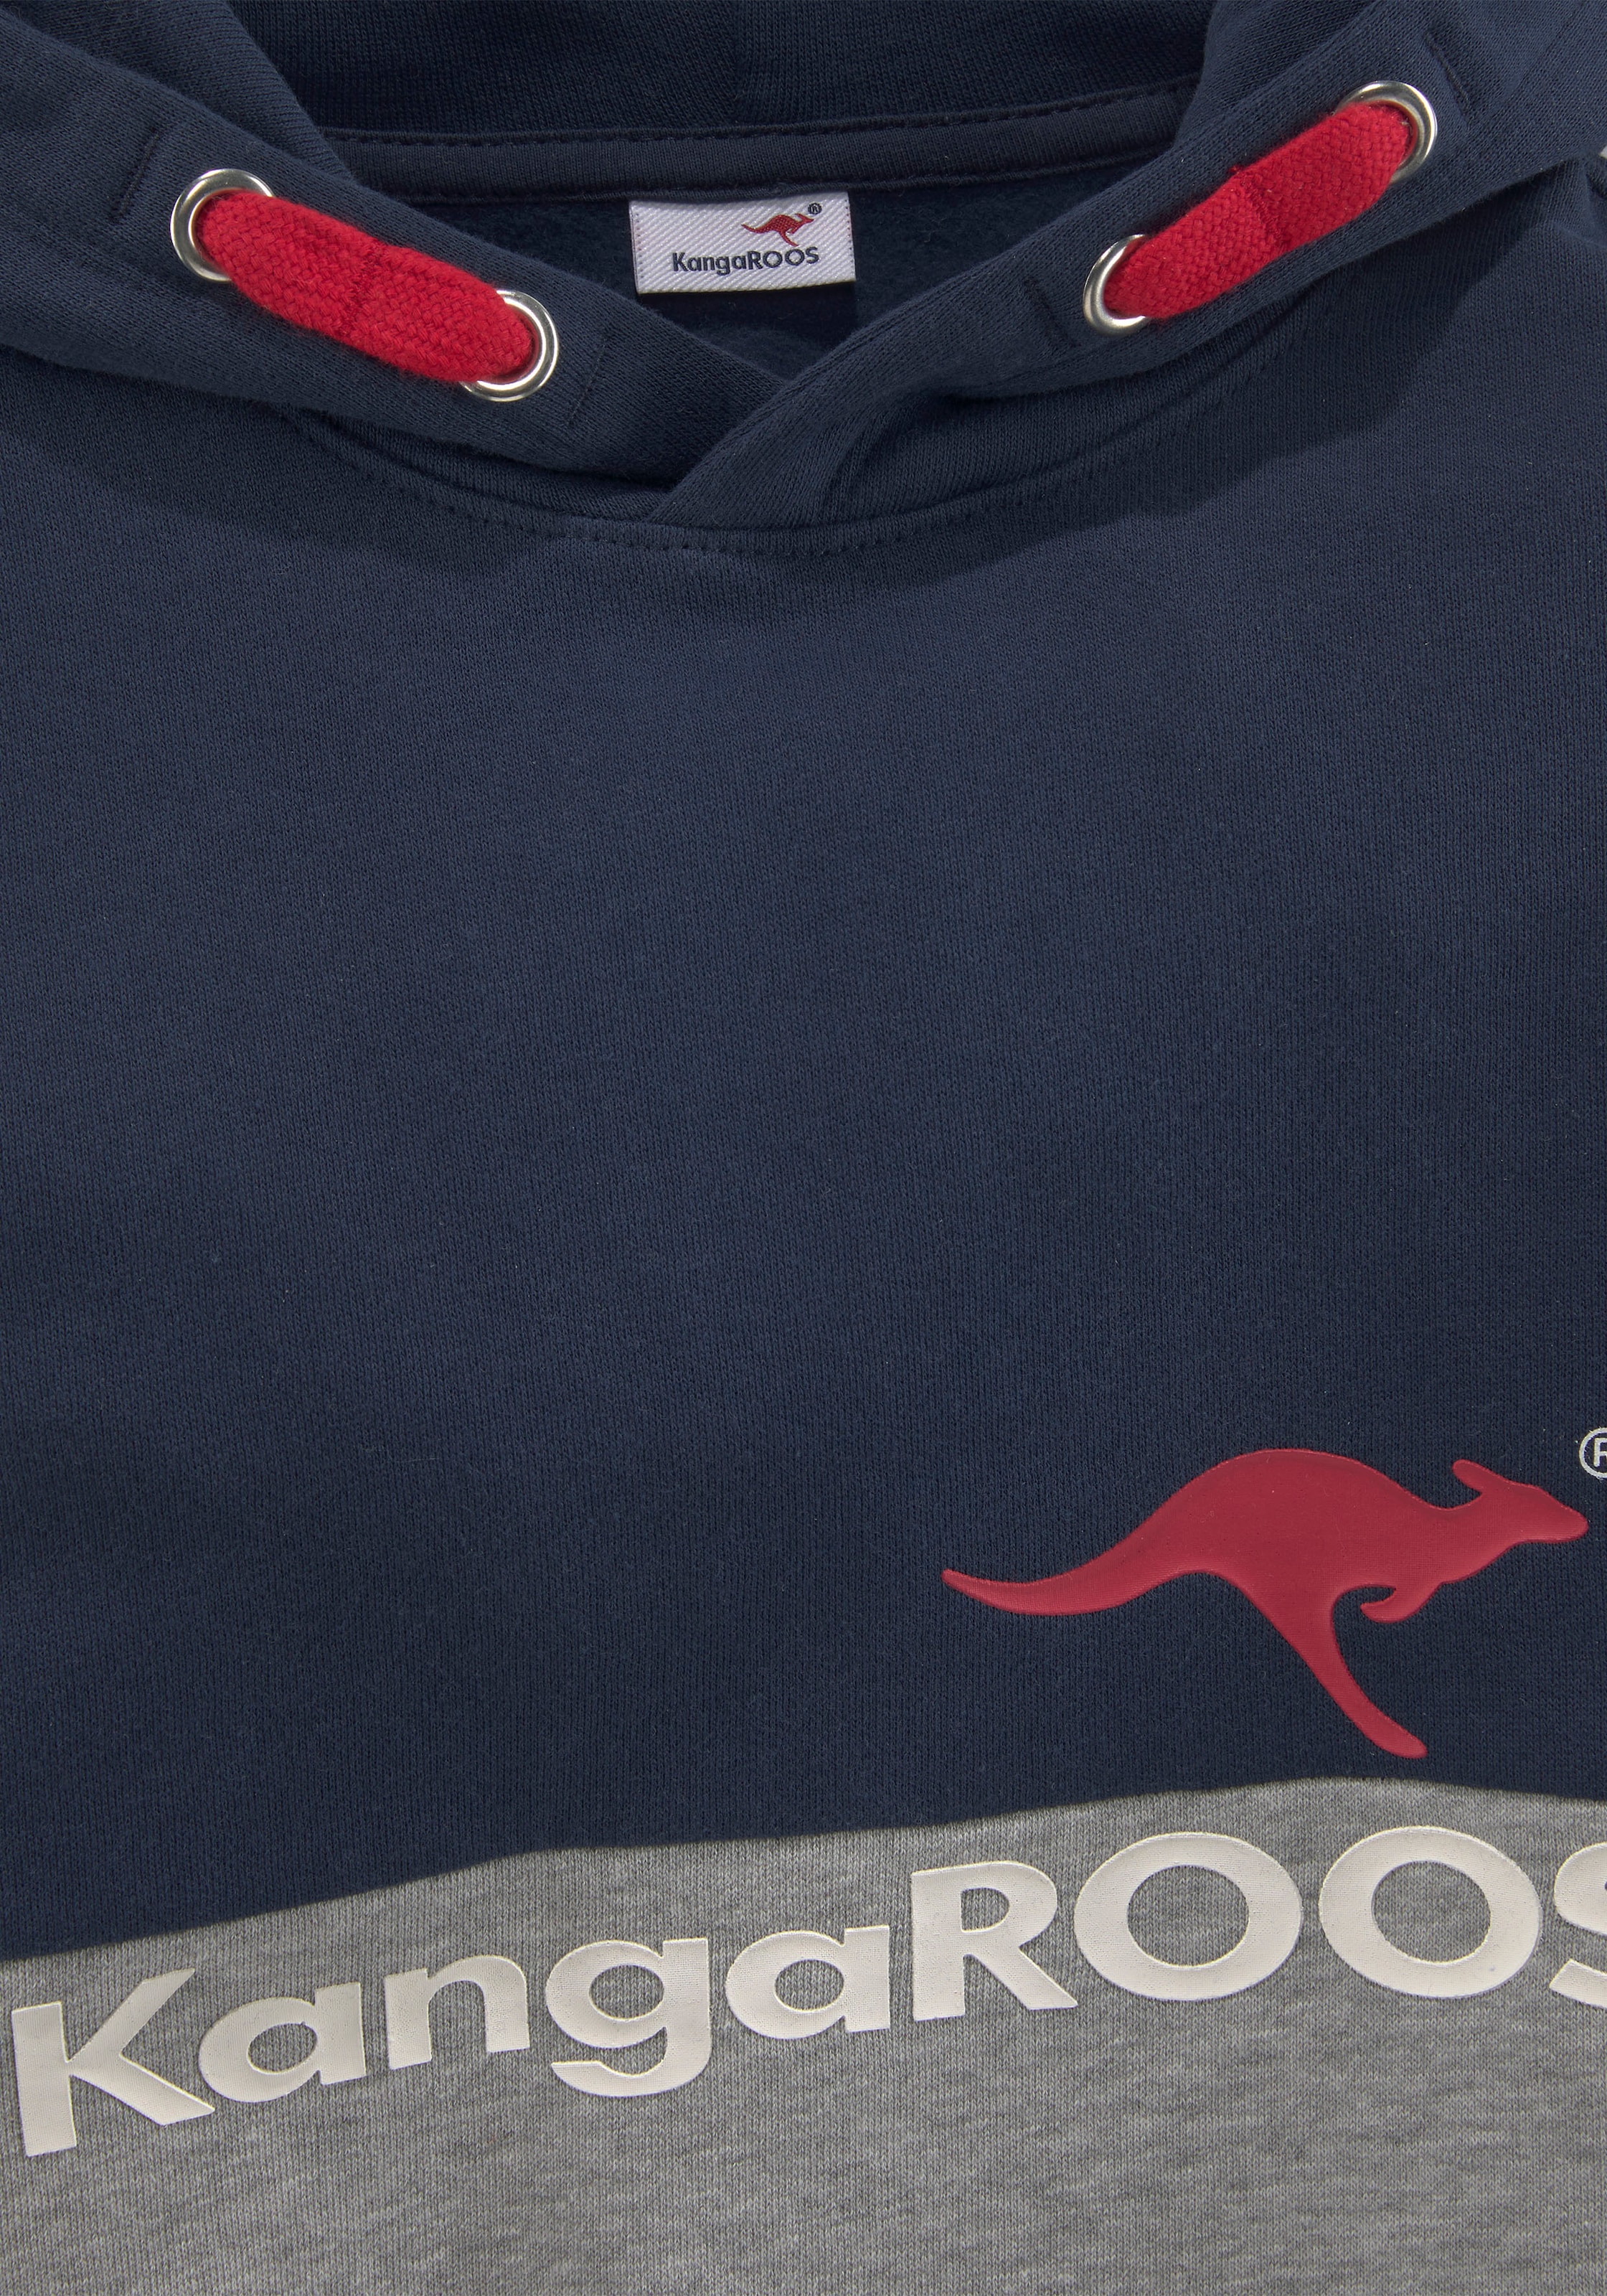 ♕ zweifarbig Kapuzensweatshirt, mit KangaROOS bei Logodruck